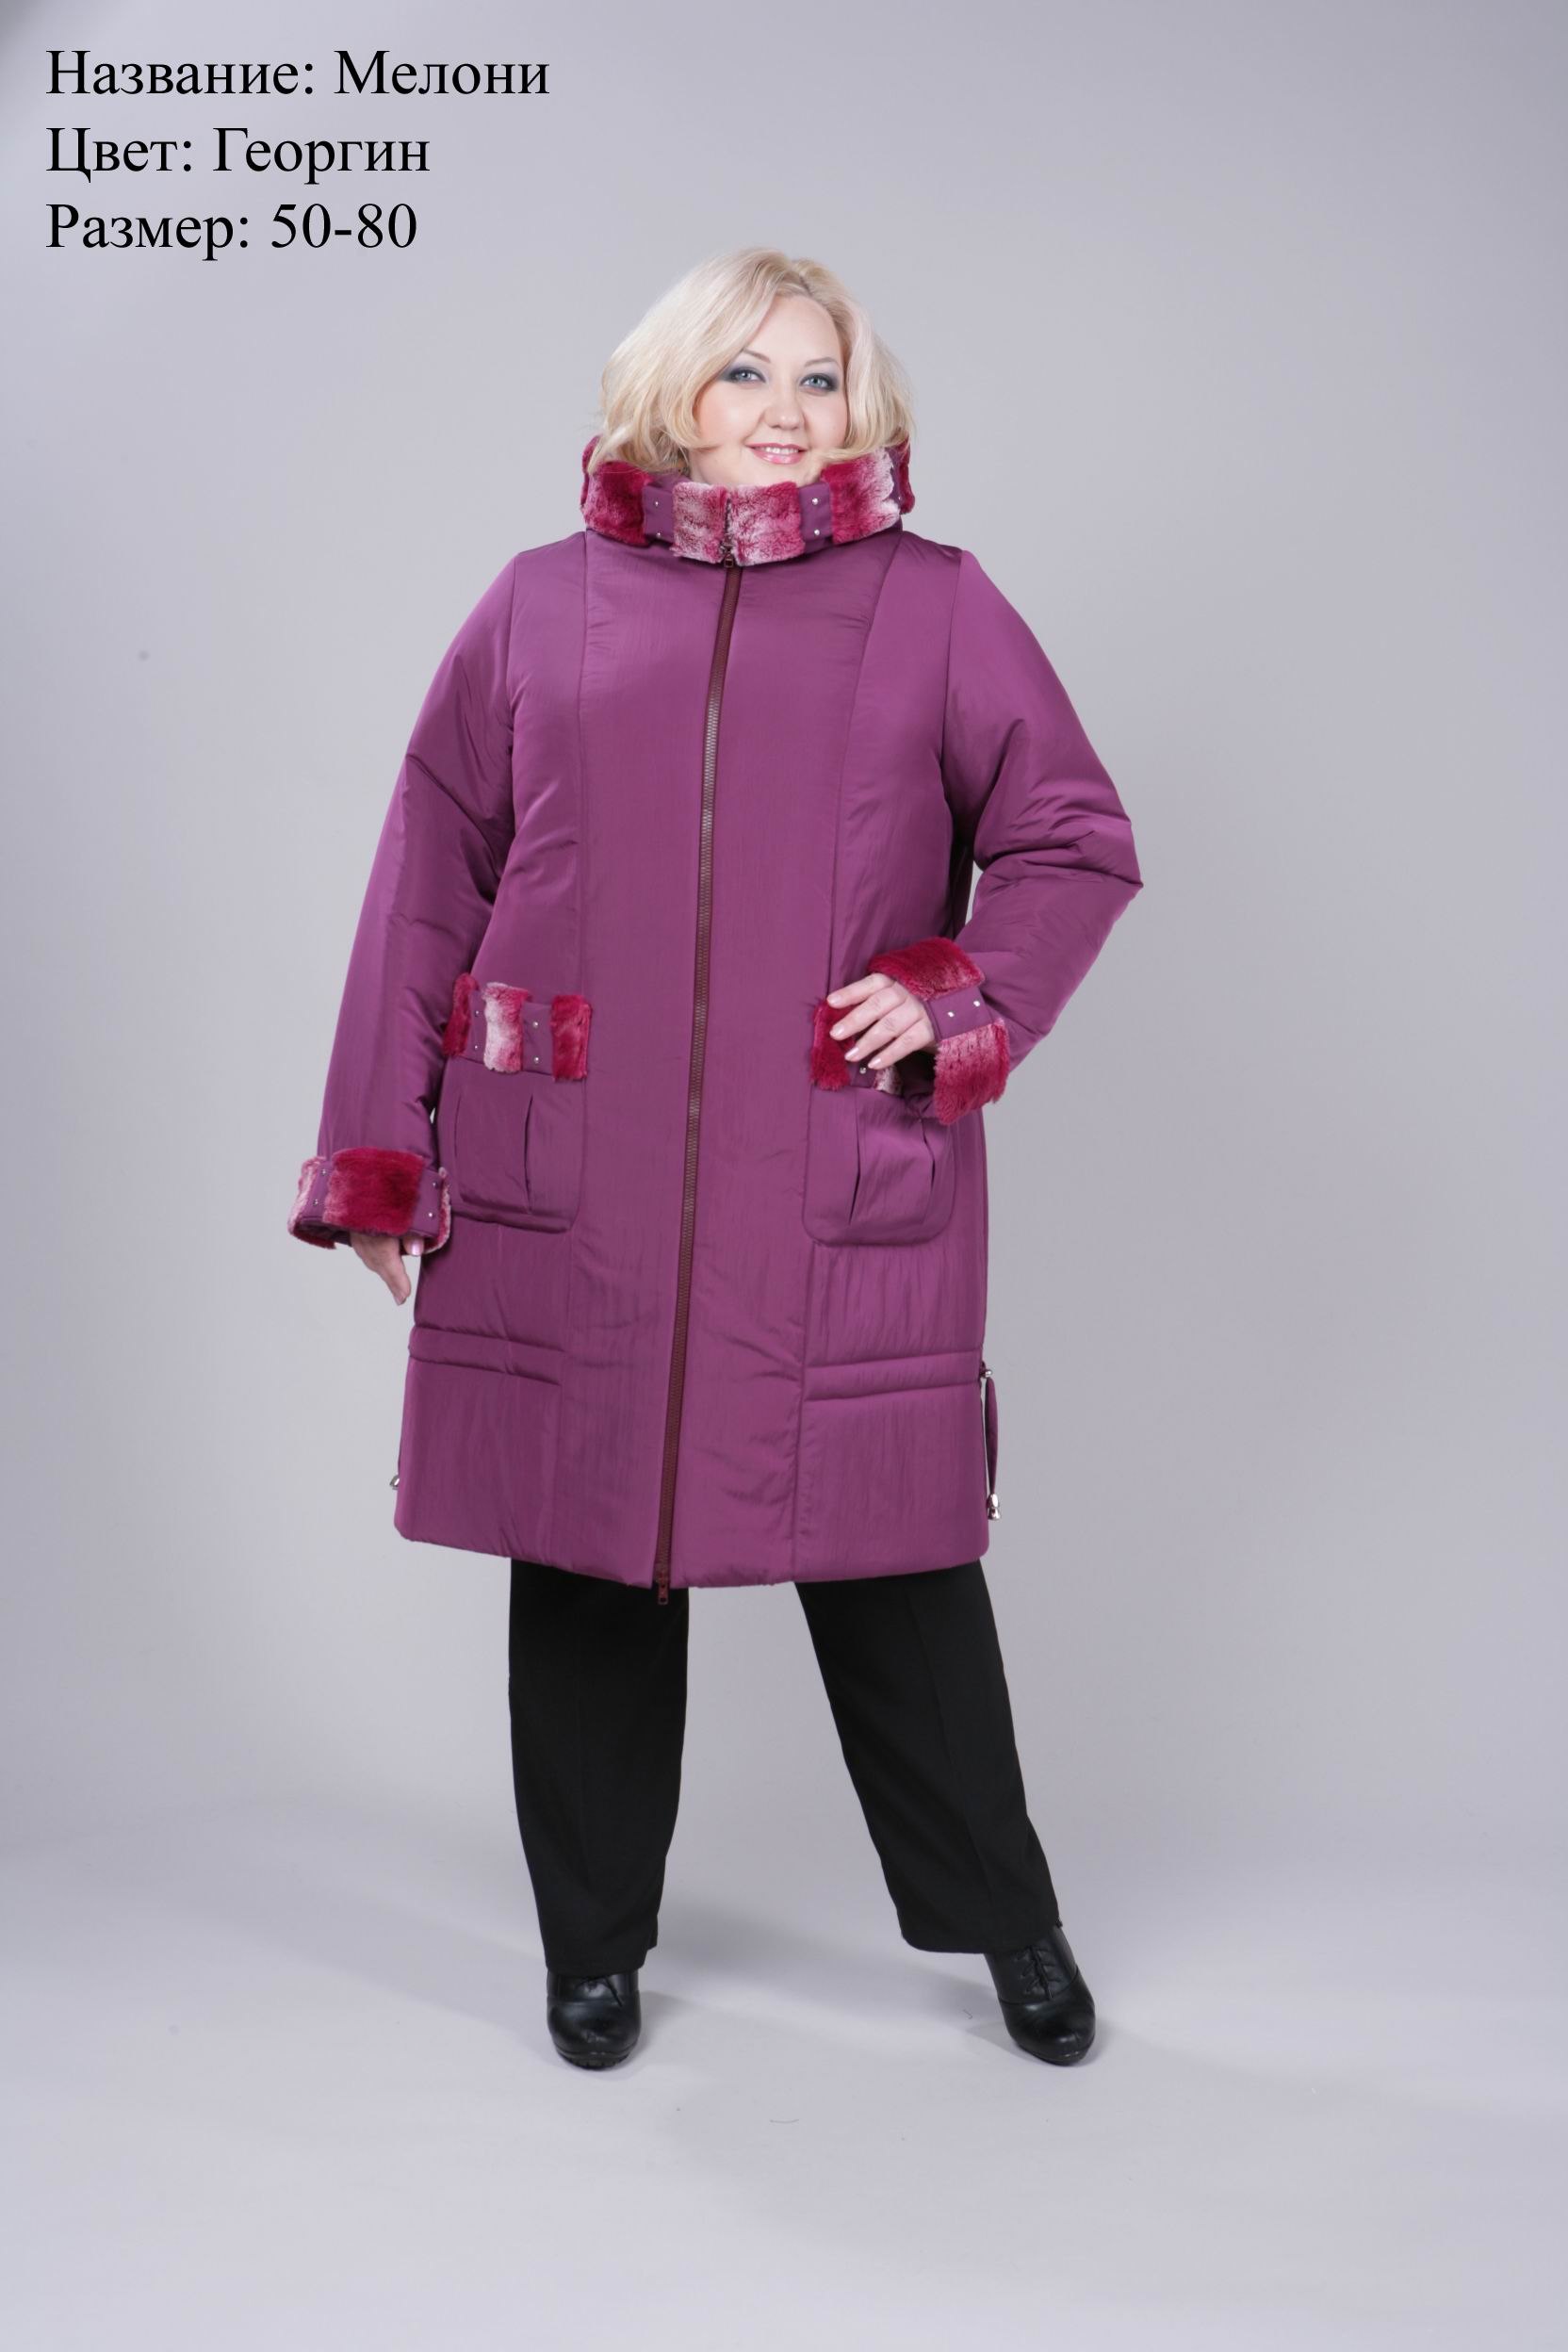 Купить пальто 60 размера. Зимняя куртка женская валберис 62 размер. Зимняя куртка женская валберис 60 размер. Пальто валберис 62 размер. Валберис зимнее пальто женское 52-54.